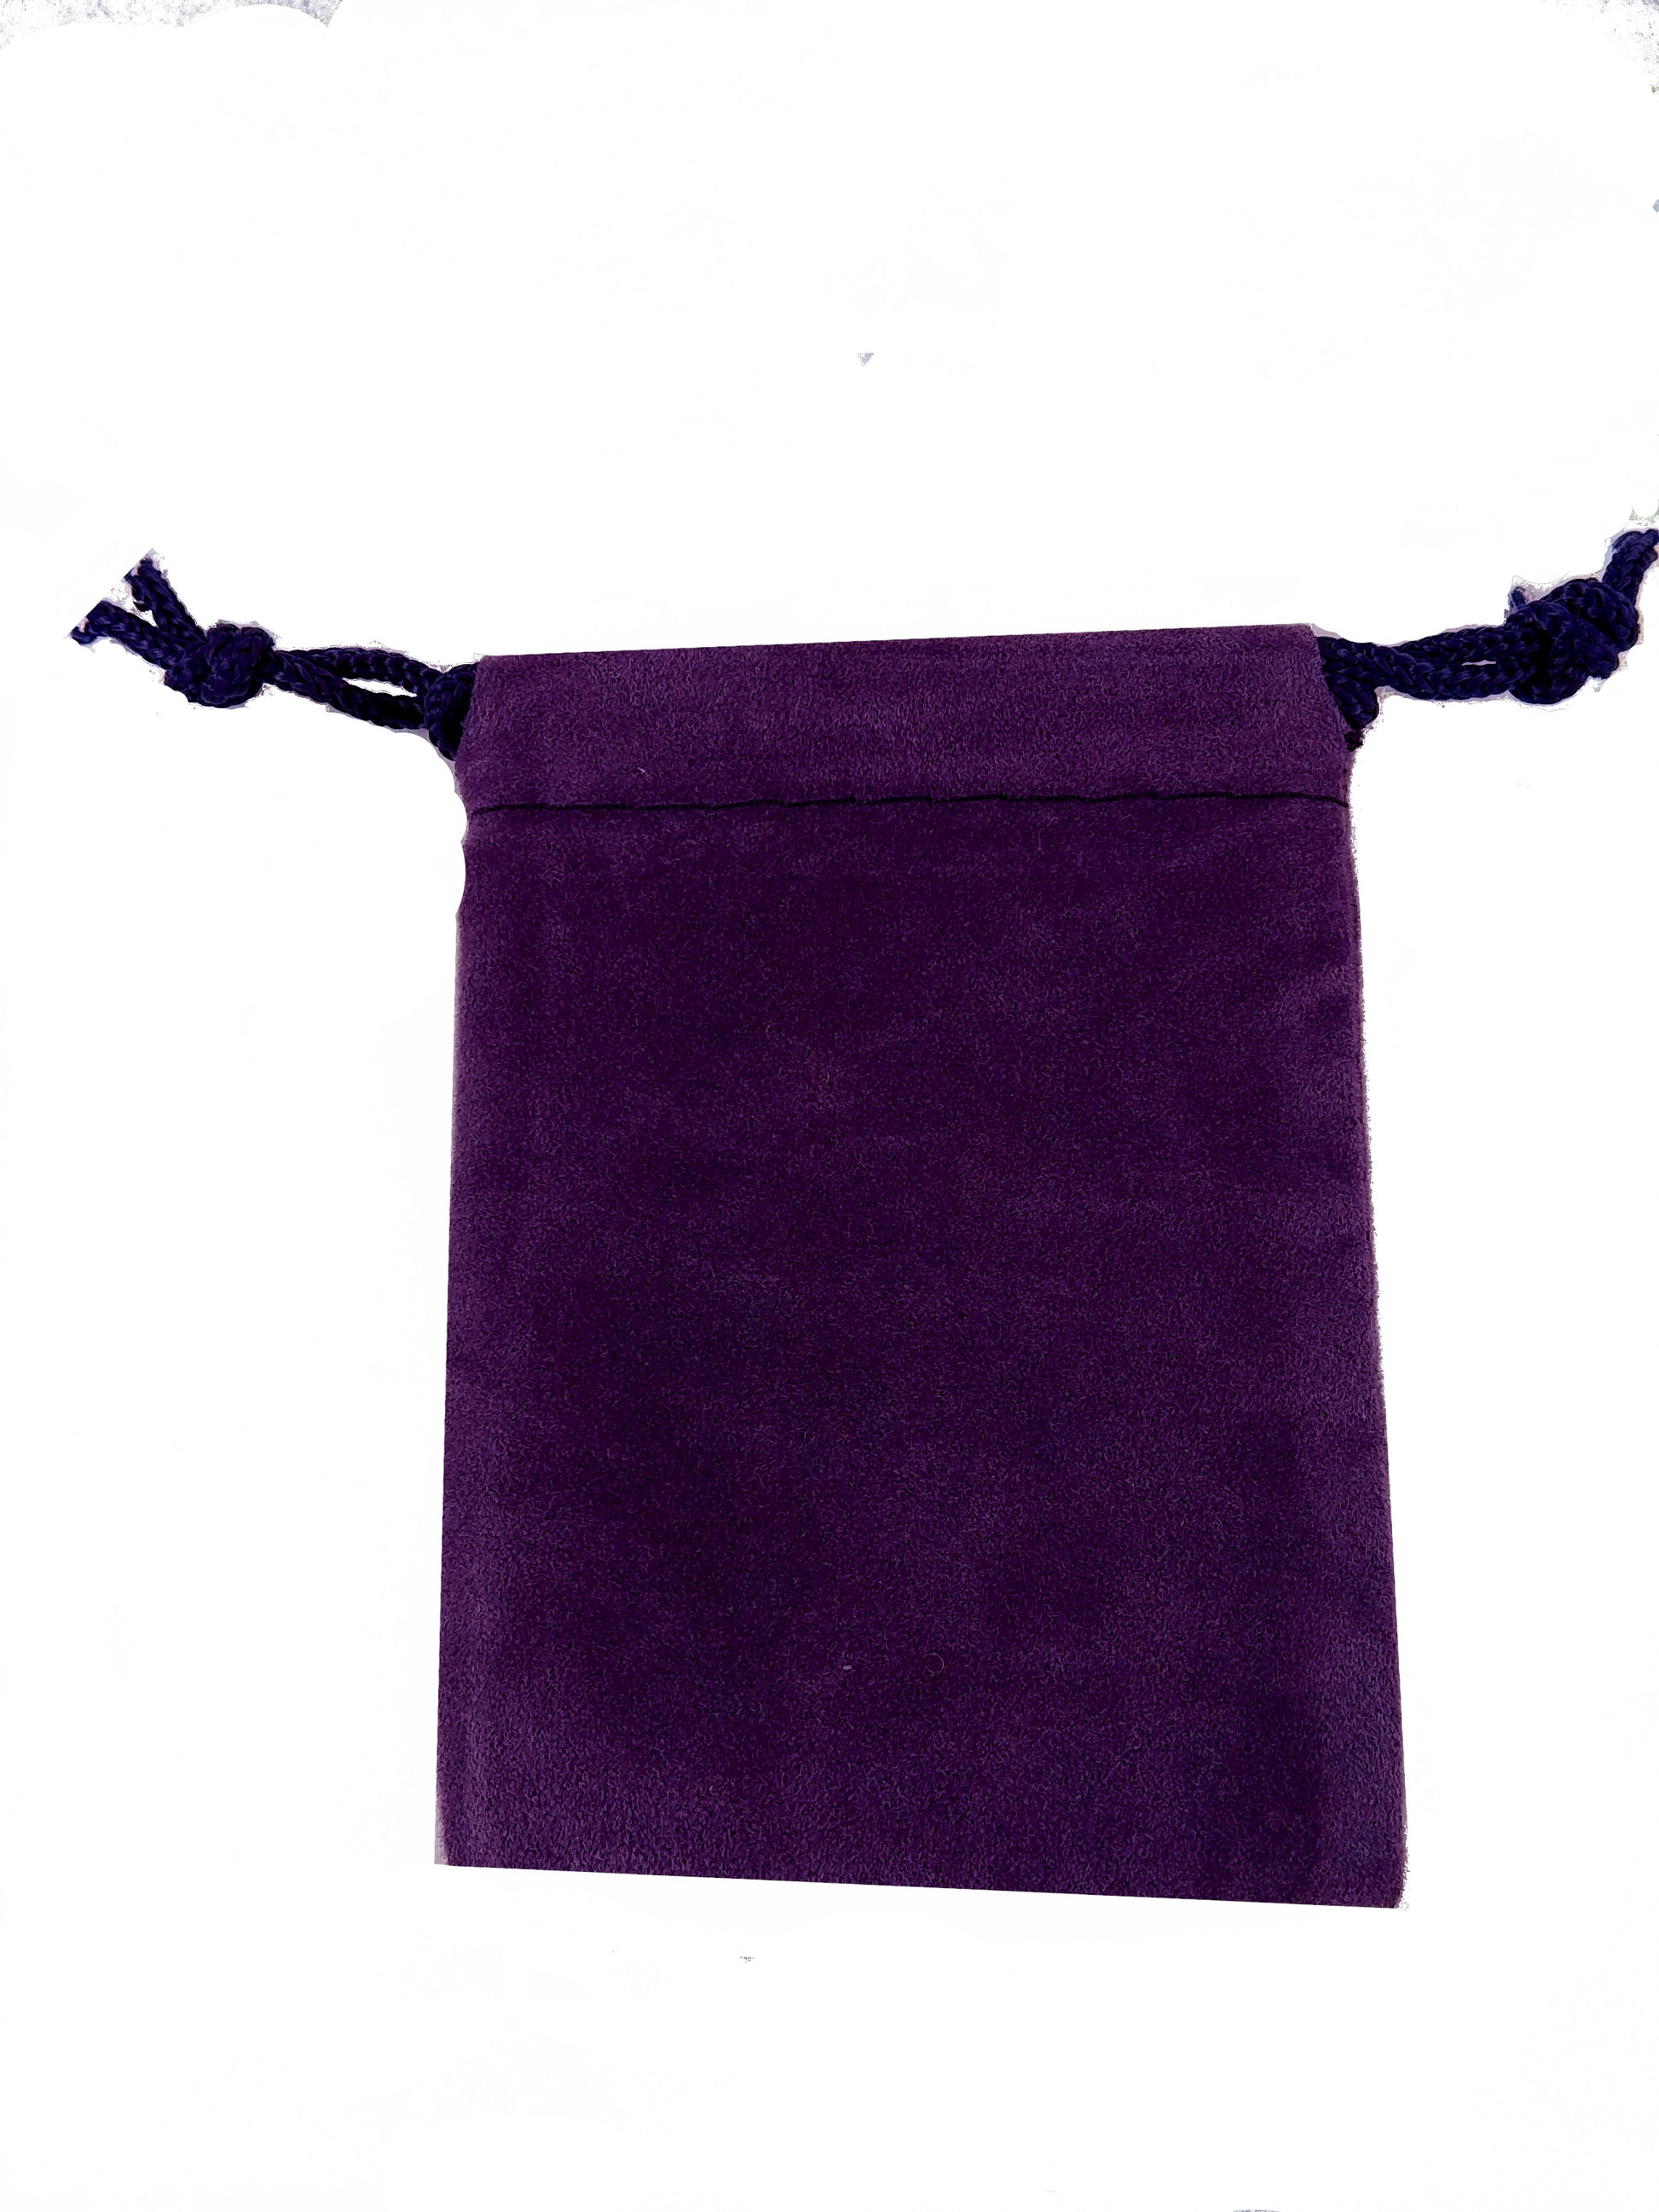 2x3 purple felt bag